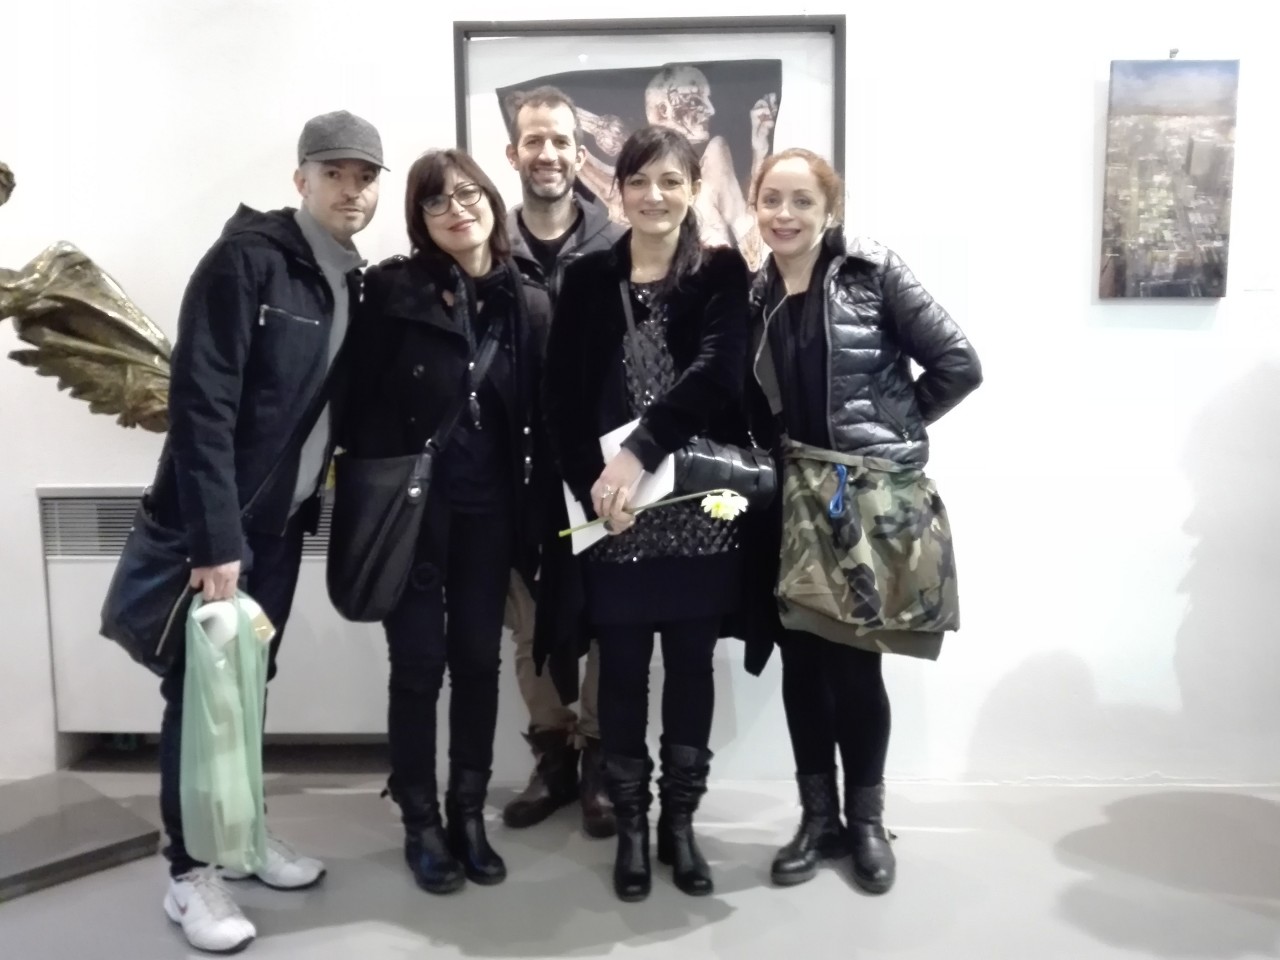 Galleria Farini Concept Exhibition - Michela Del Degan